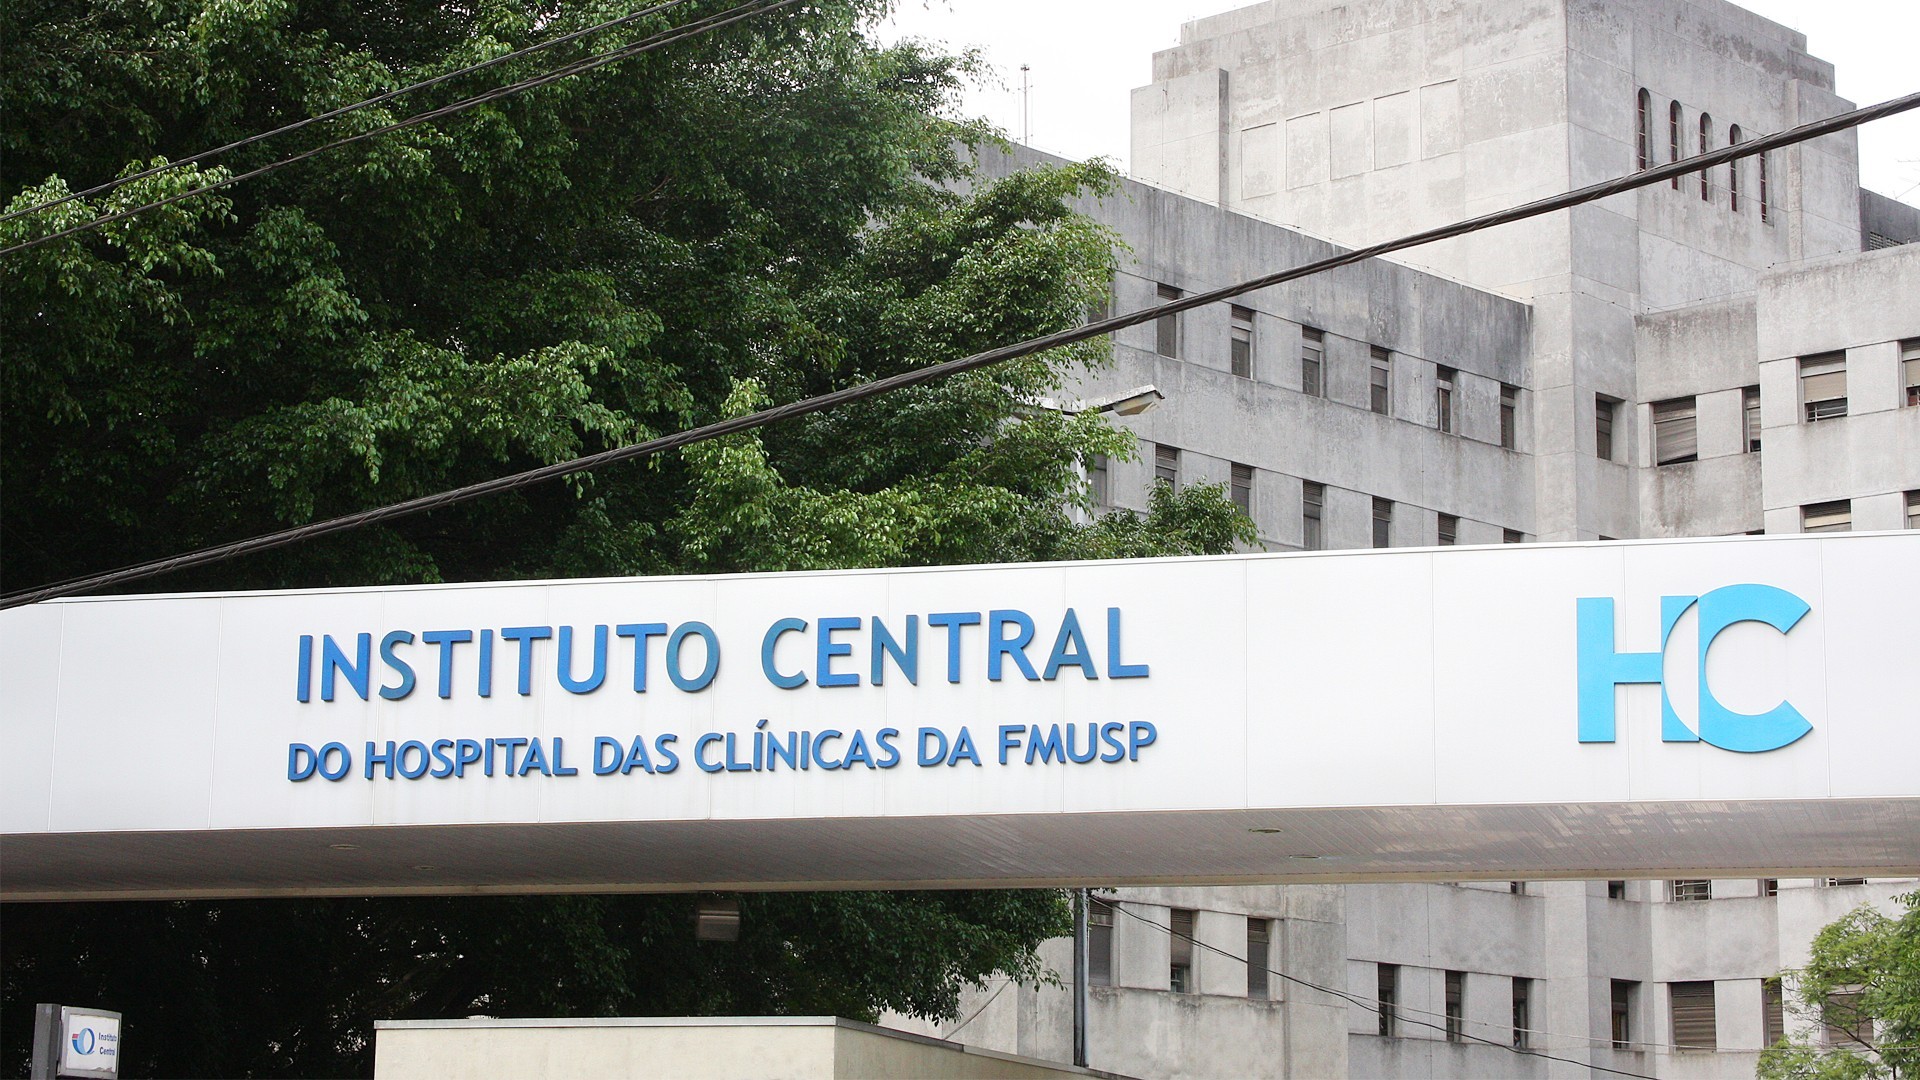 Instituto Central do Hospital das Clínicas da FMUSP